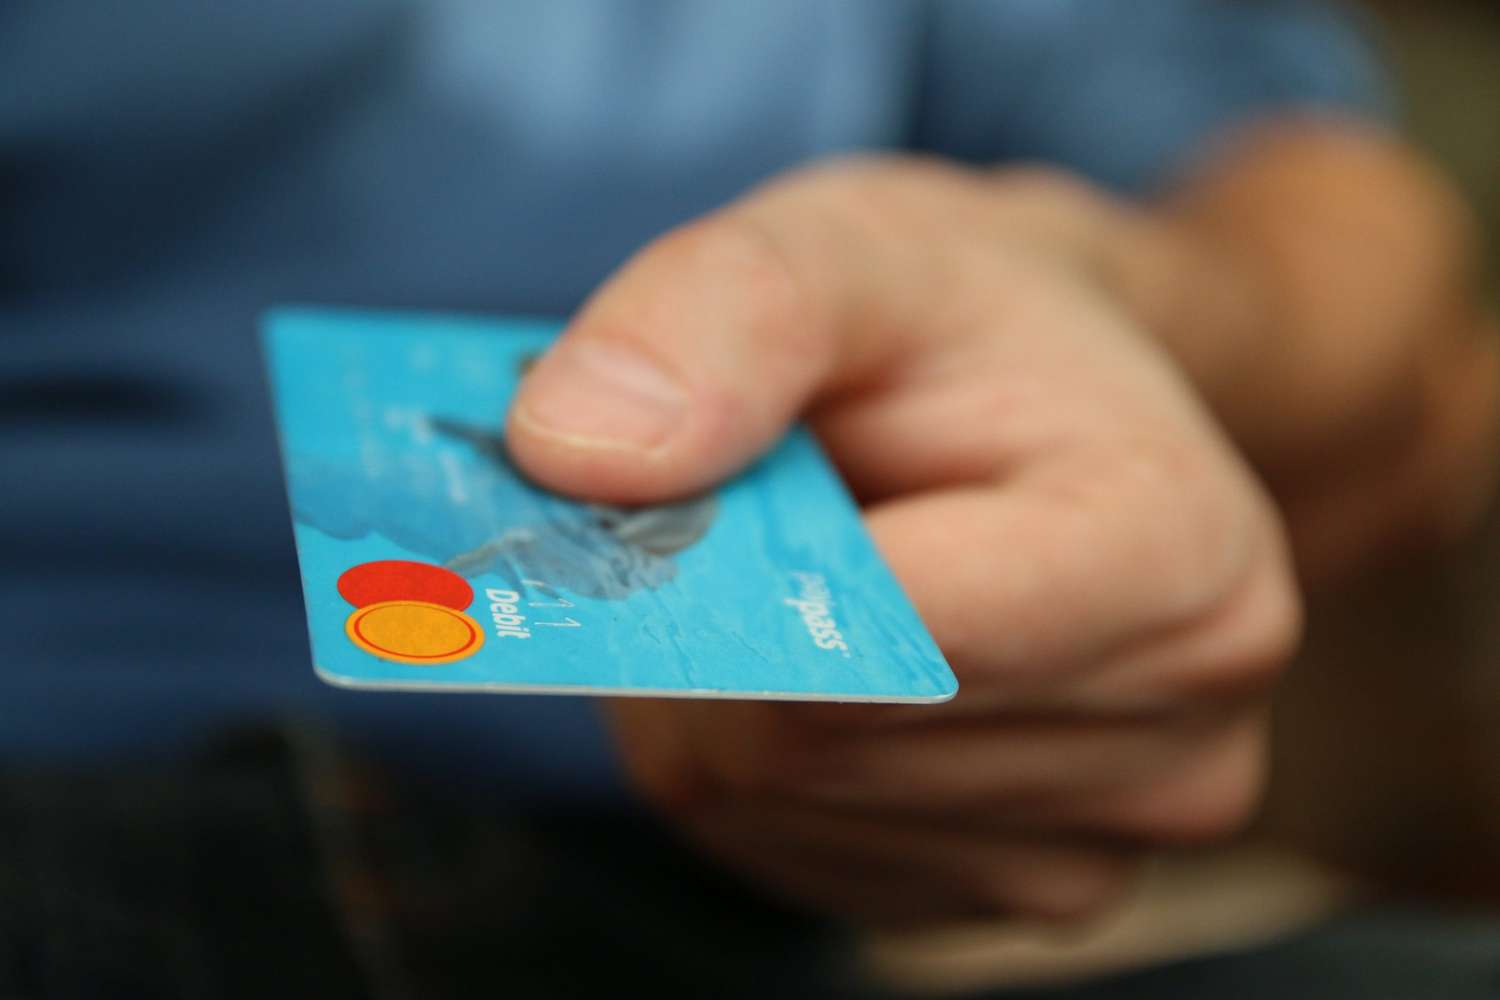 Los comercios tendrán acreditadas al siguiente día hábil las ventas con tarjetas de débito